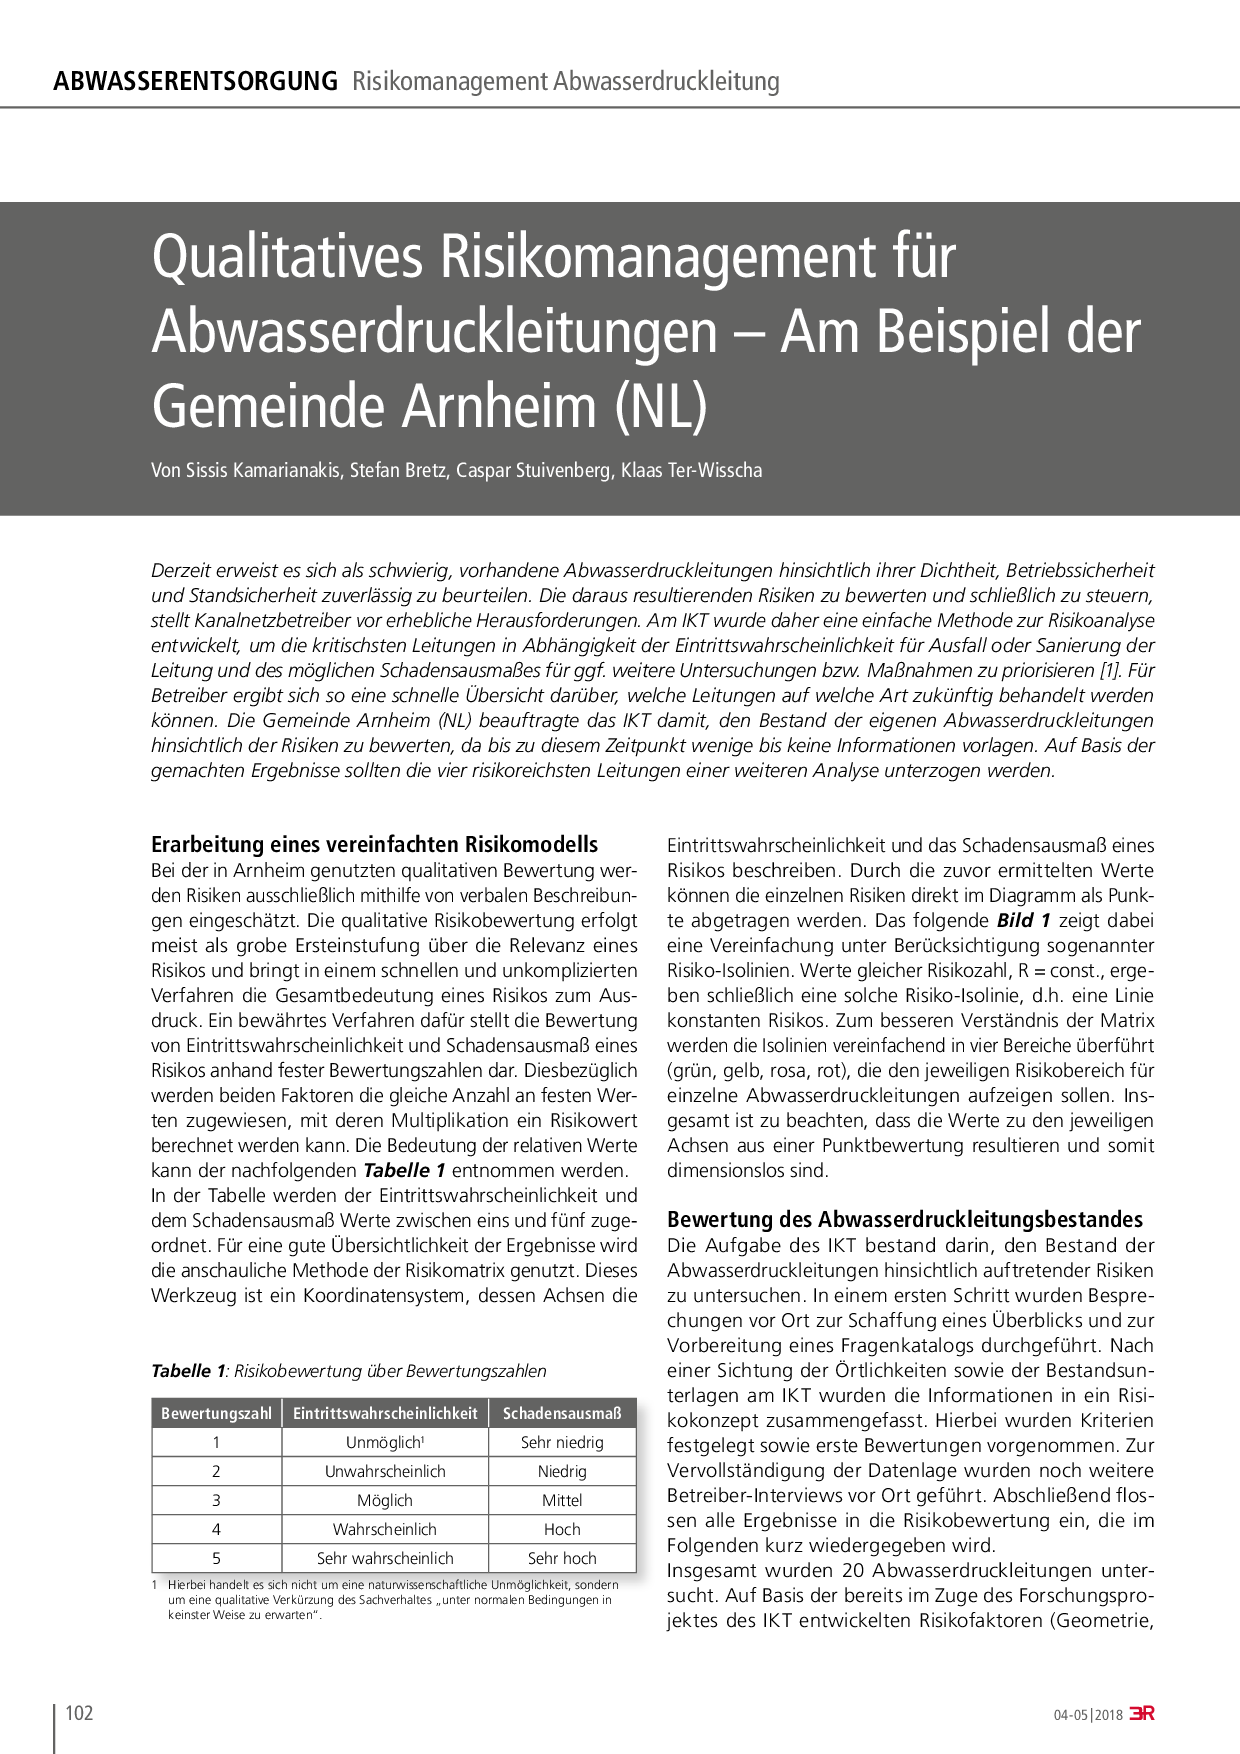 Qualitatives Risikomanagement für Abwasserdruckleitungen – Am Beispiel der Gemeinde Arnheim (NL)